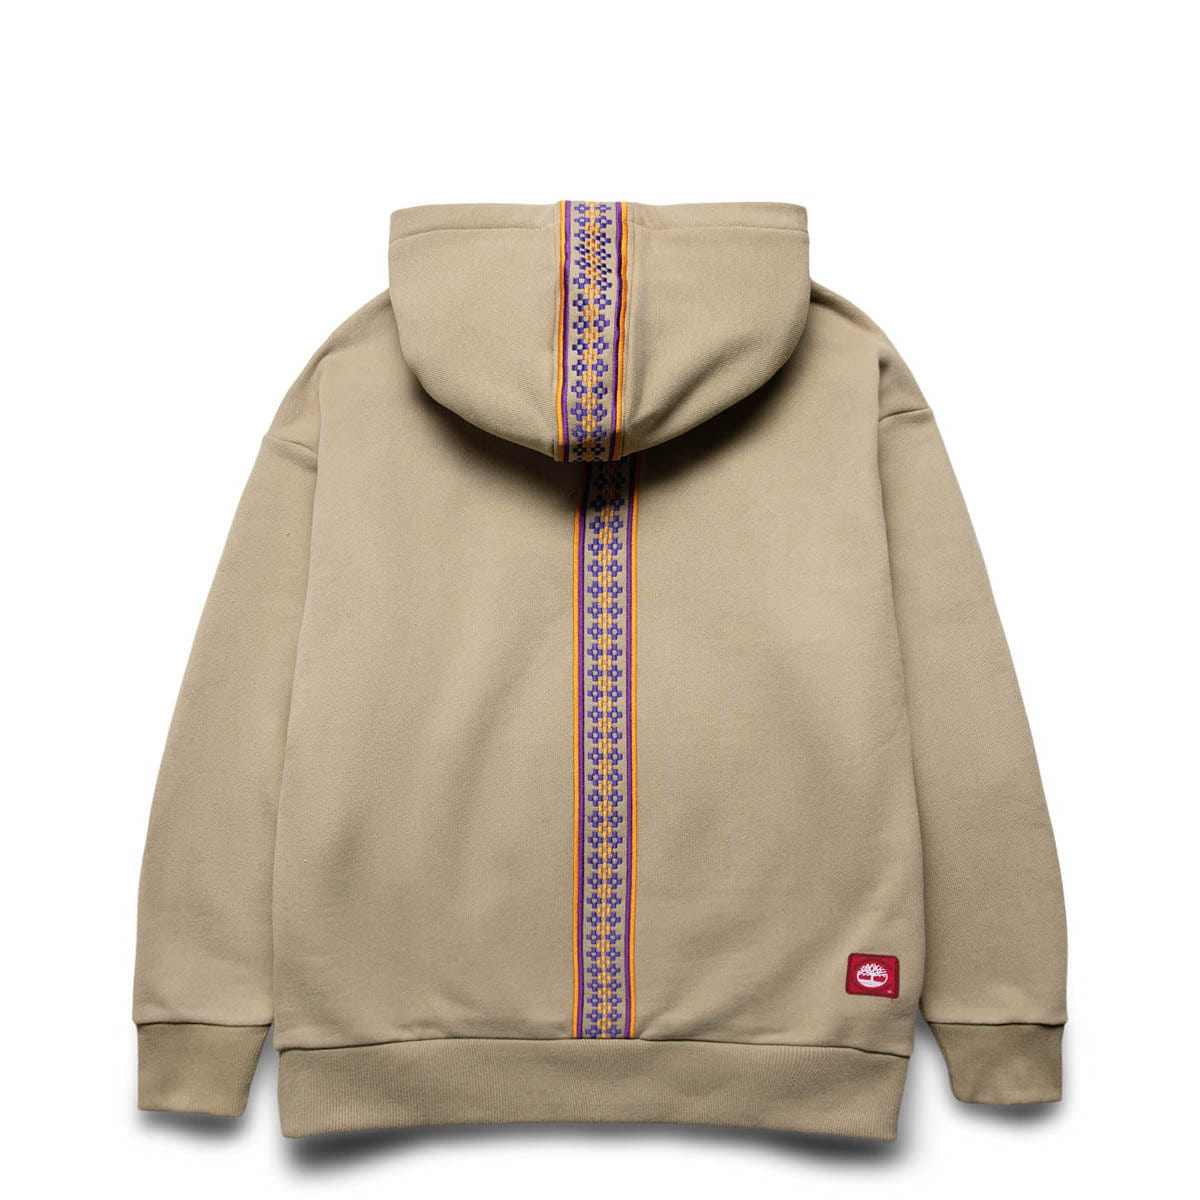 Timberland Hoodies & Sweatshirts X CLOT GENDER NEUTRAL HOODIE